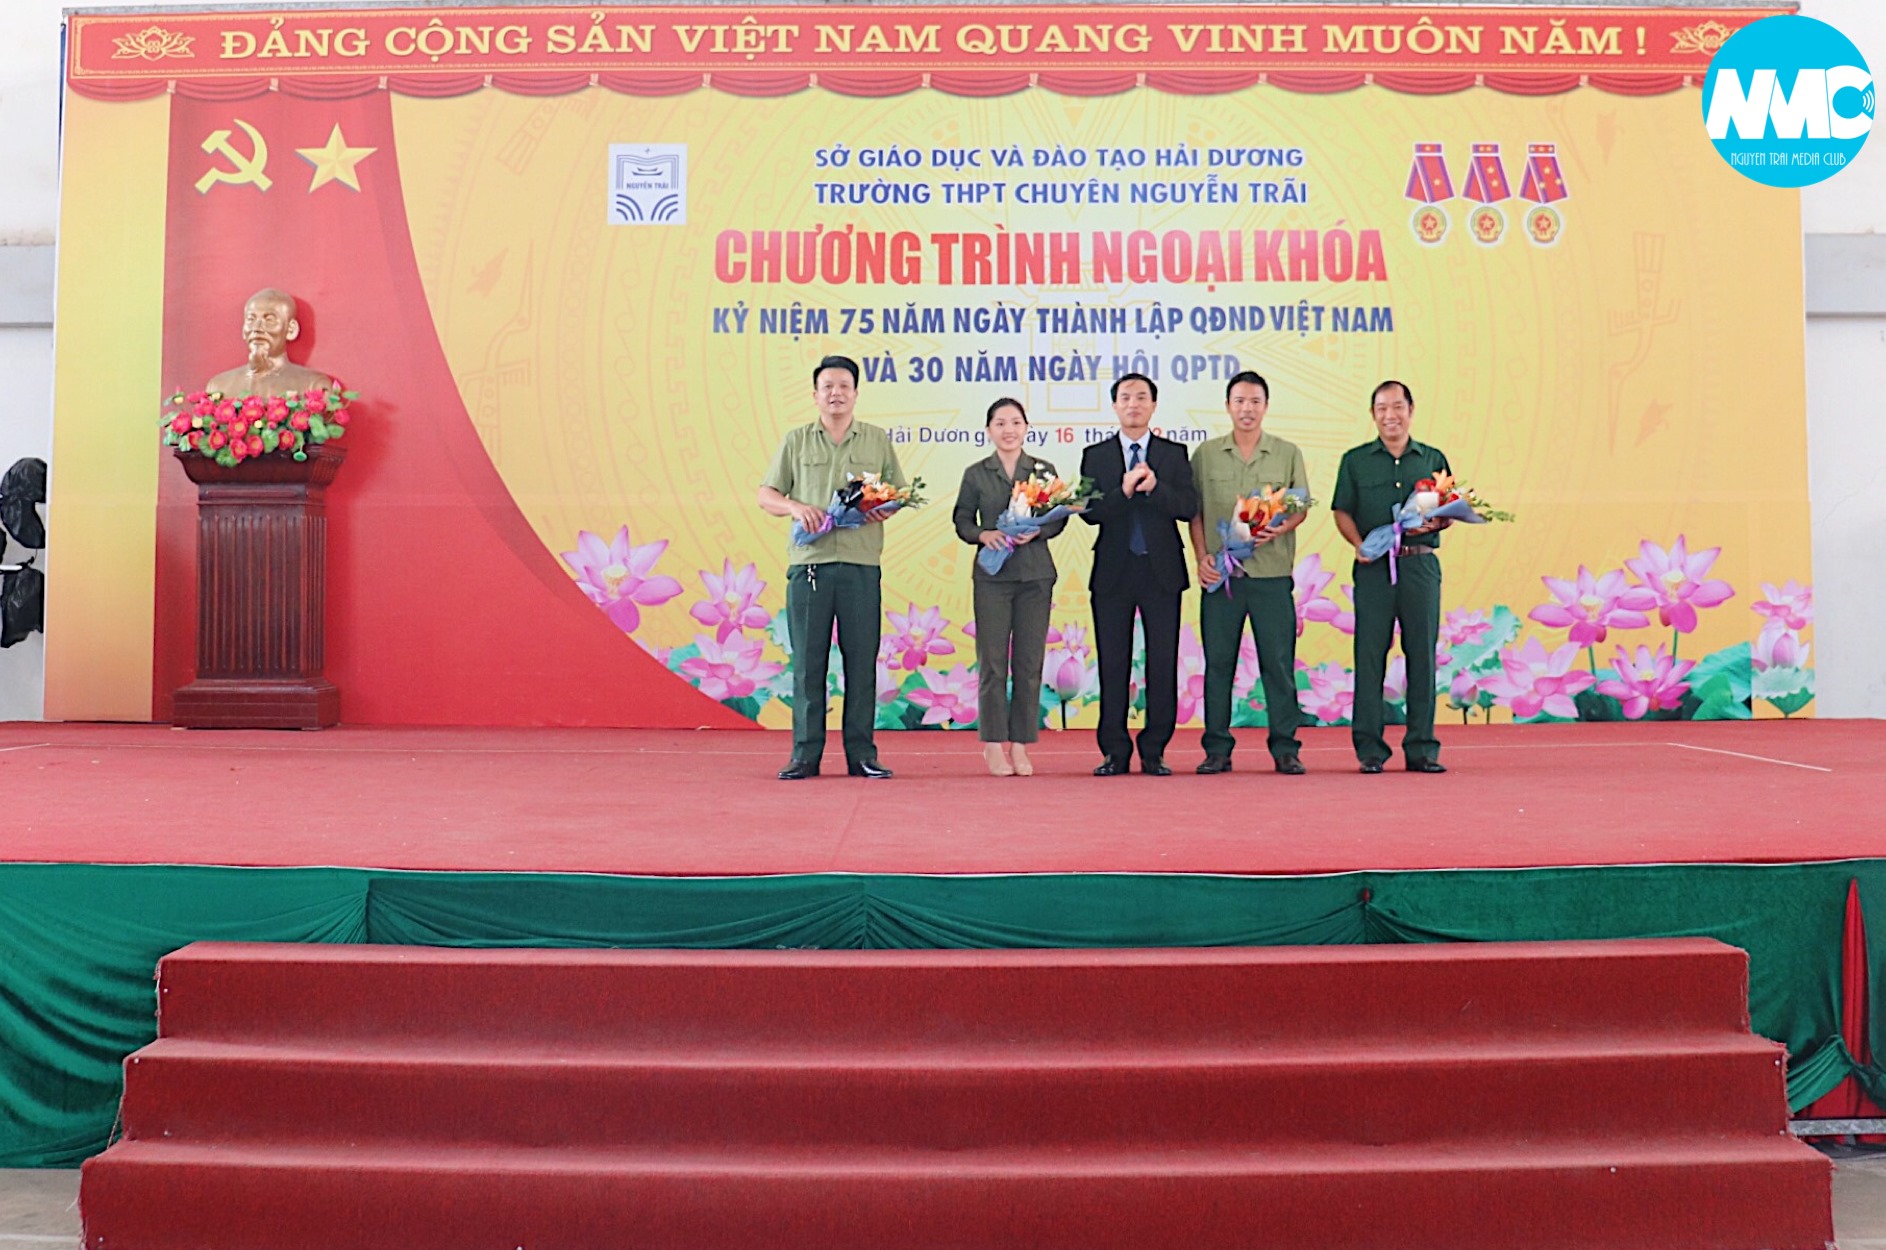 Kỉ niệm ngày thành lập Quân đội Nhân dân Việt Nam 22-12-2019